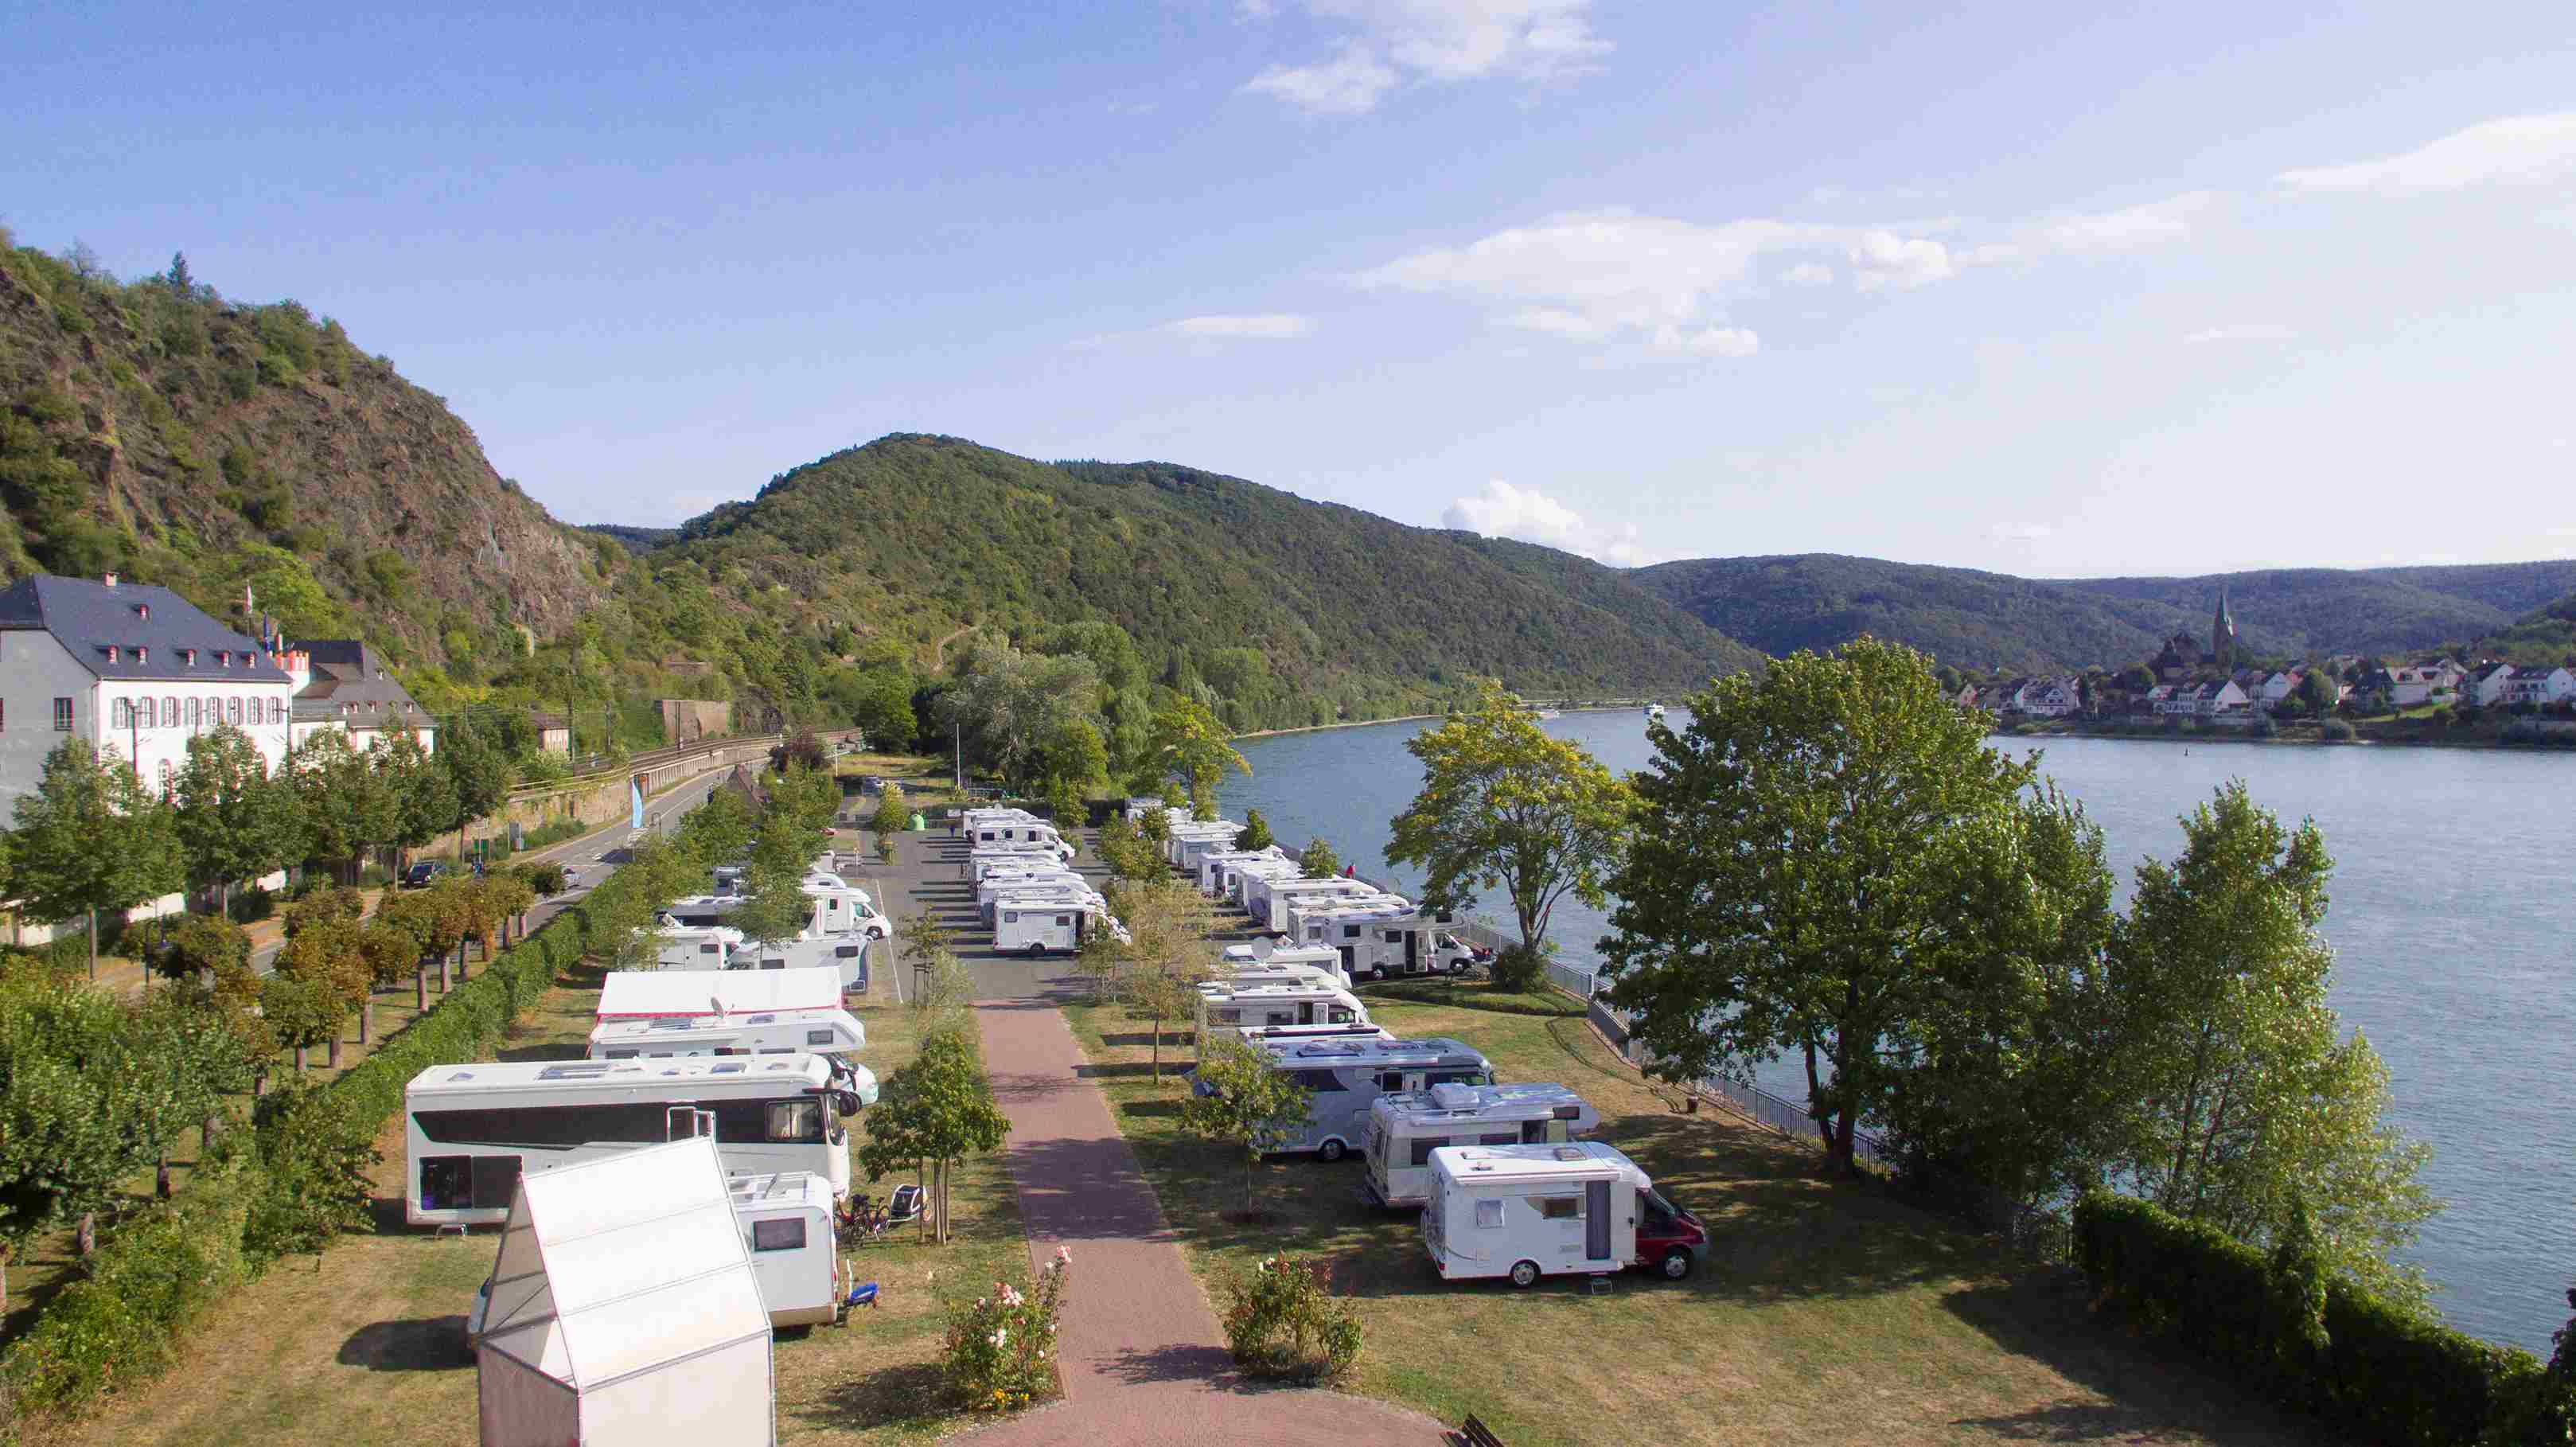 Luftaufnahme von einem Campingplatz mit mehreren Wohnmobilen am See